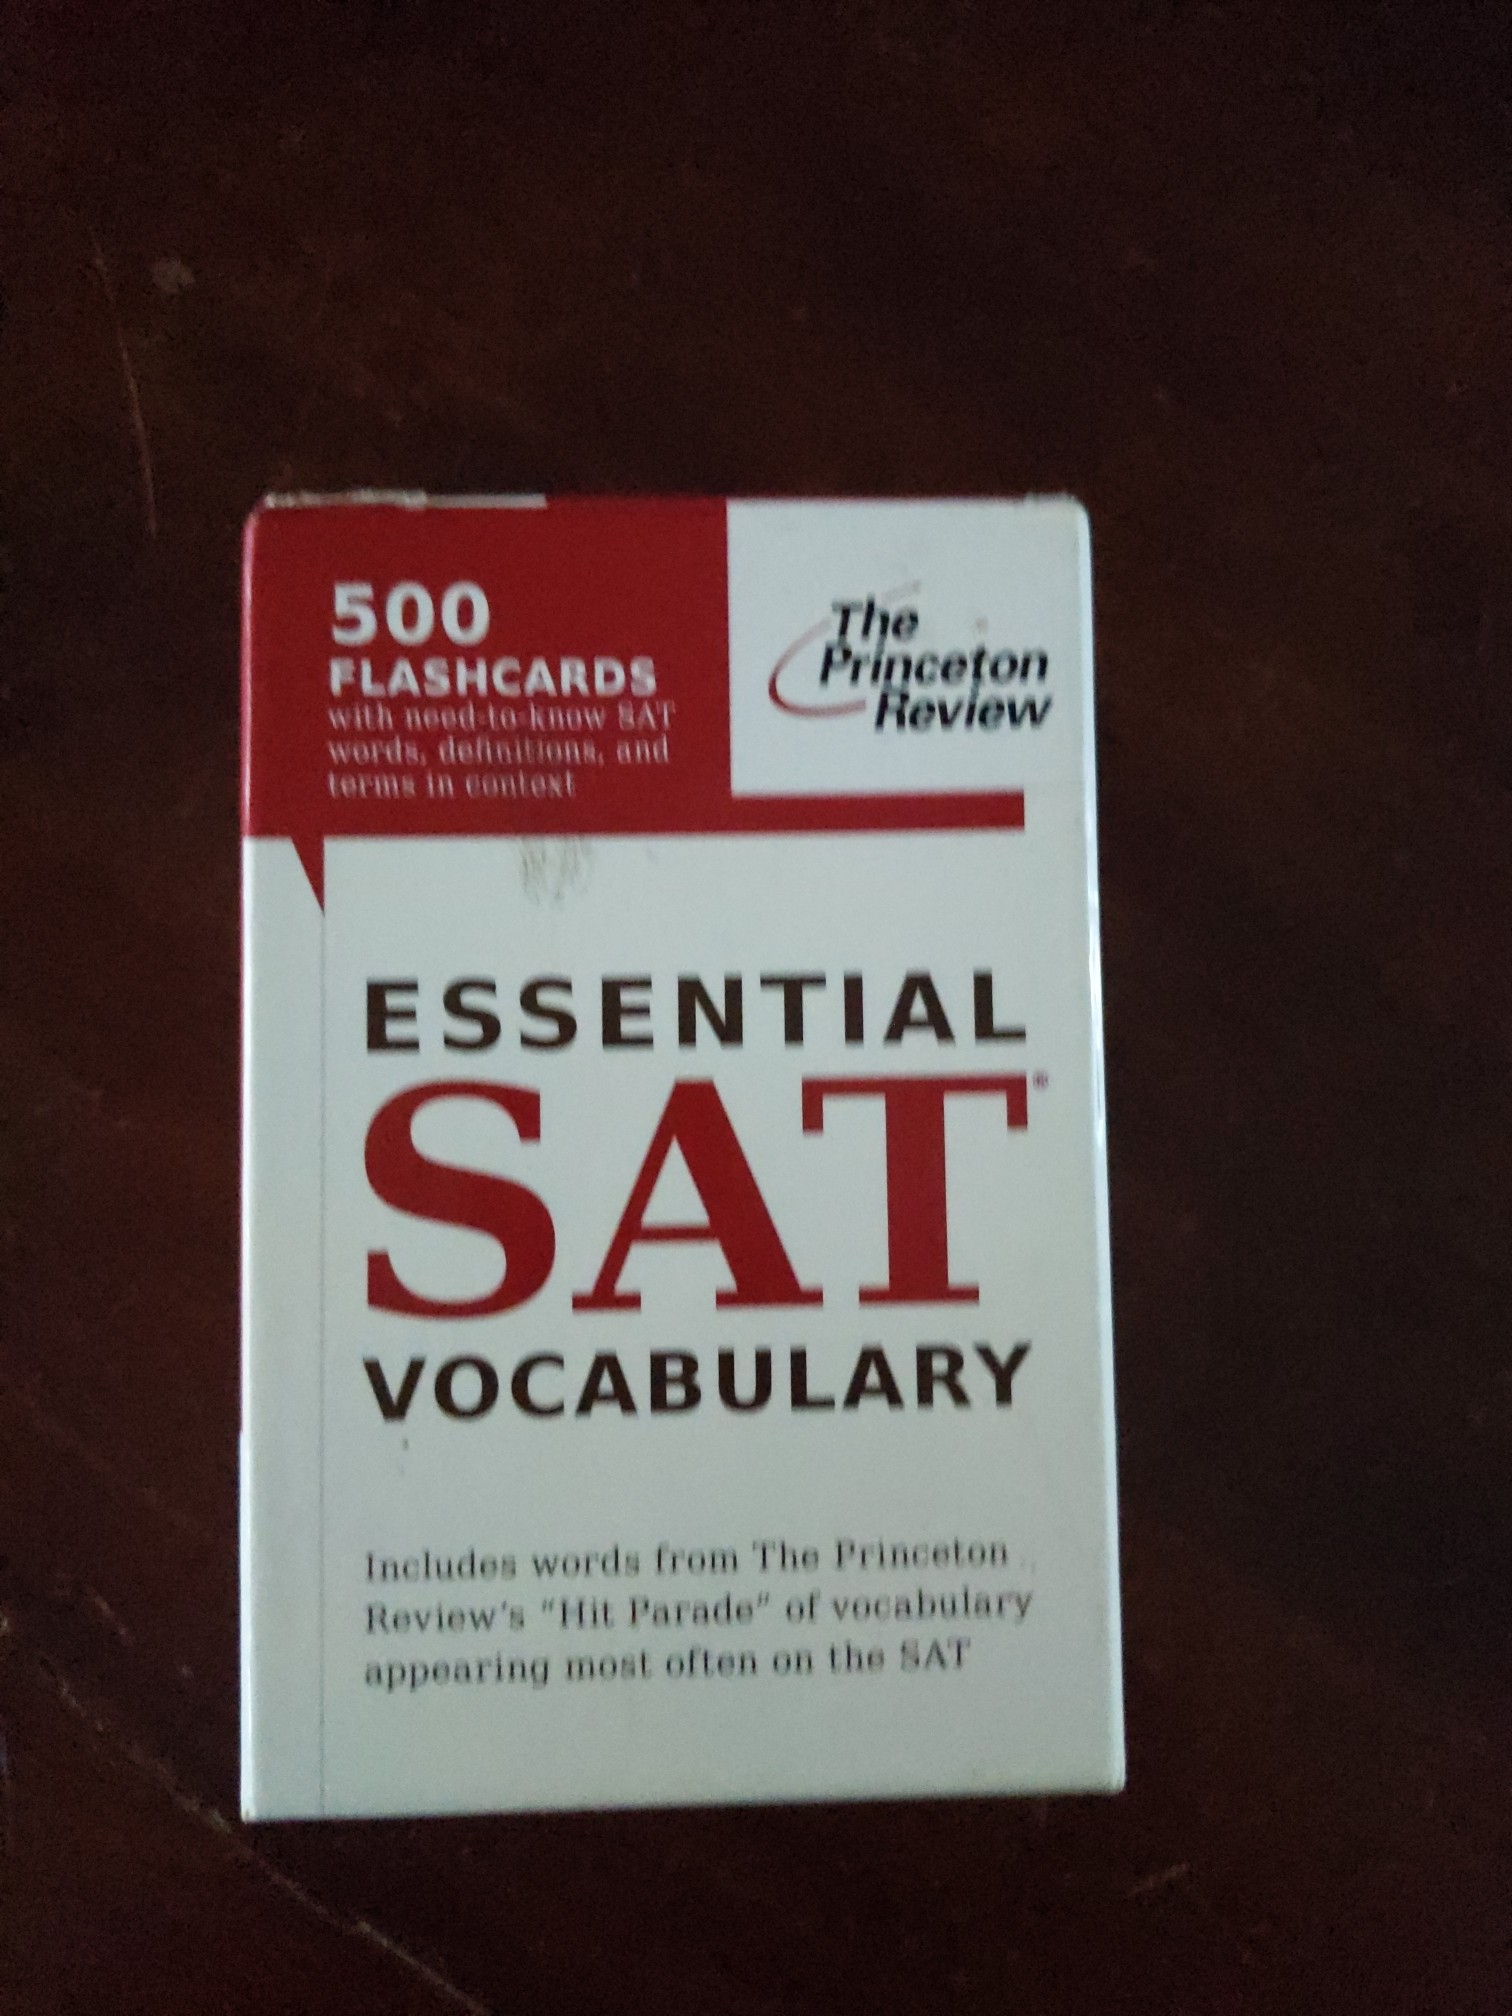 libros y revistas - Cartas para estudiar el SAT